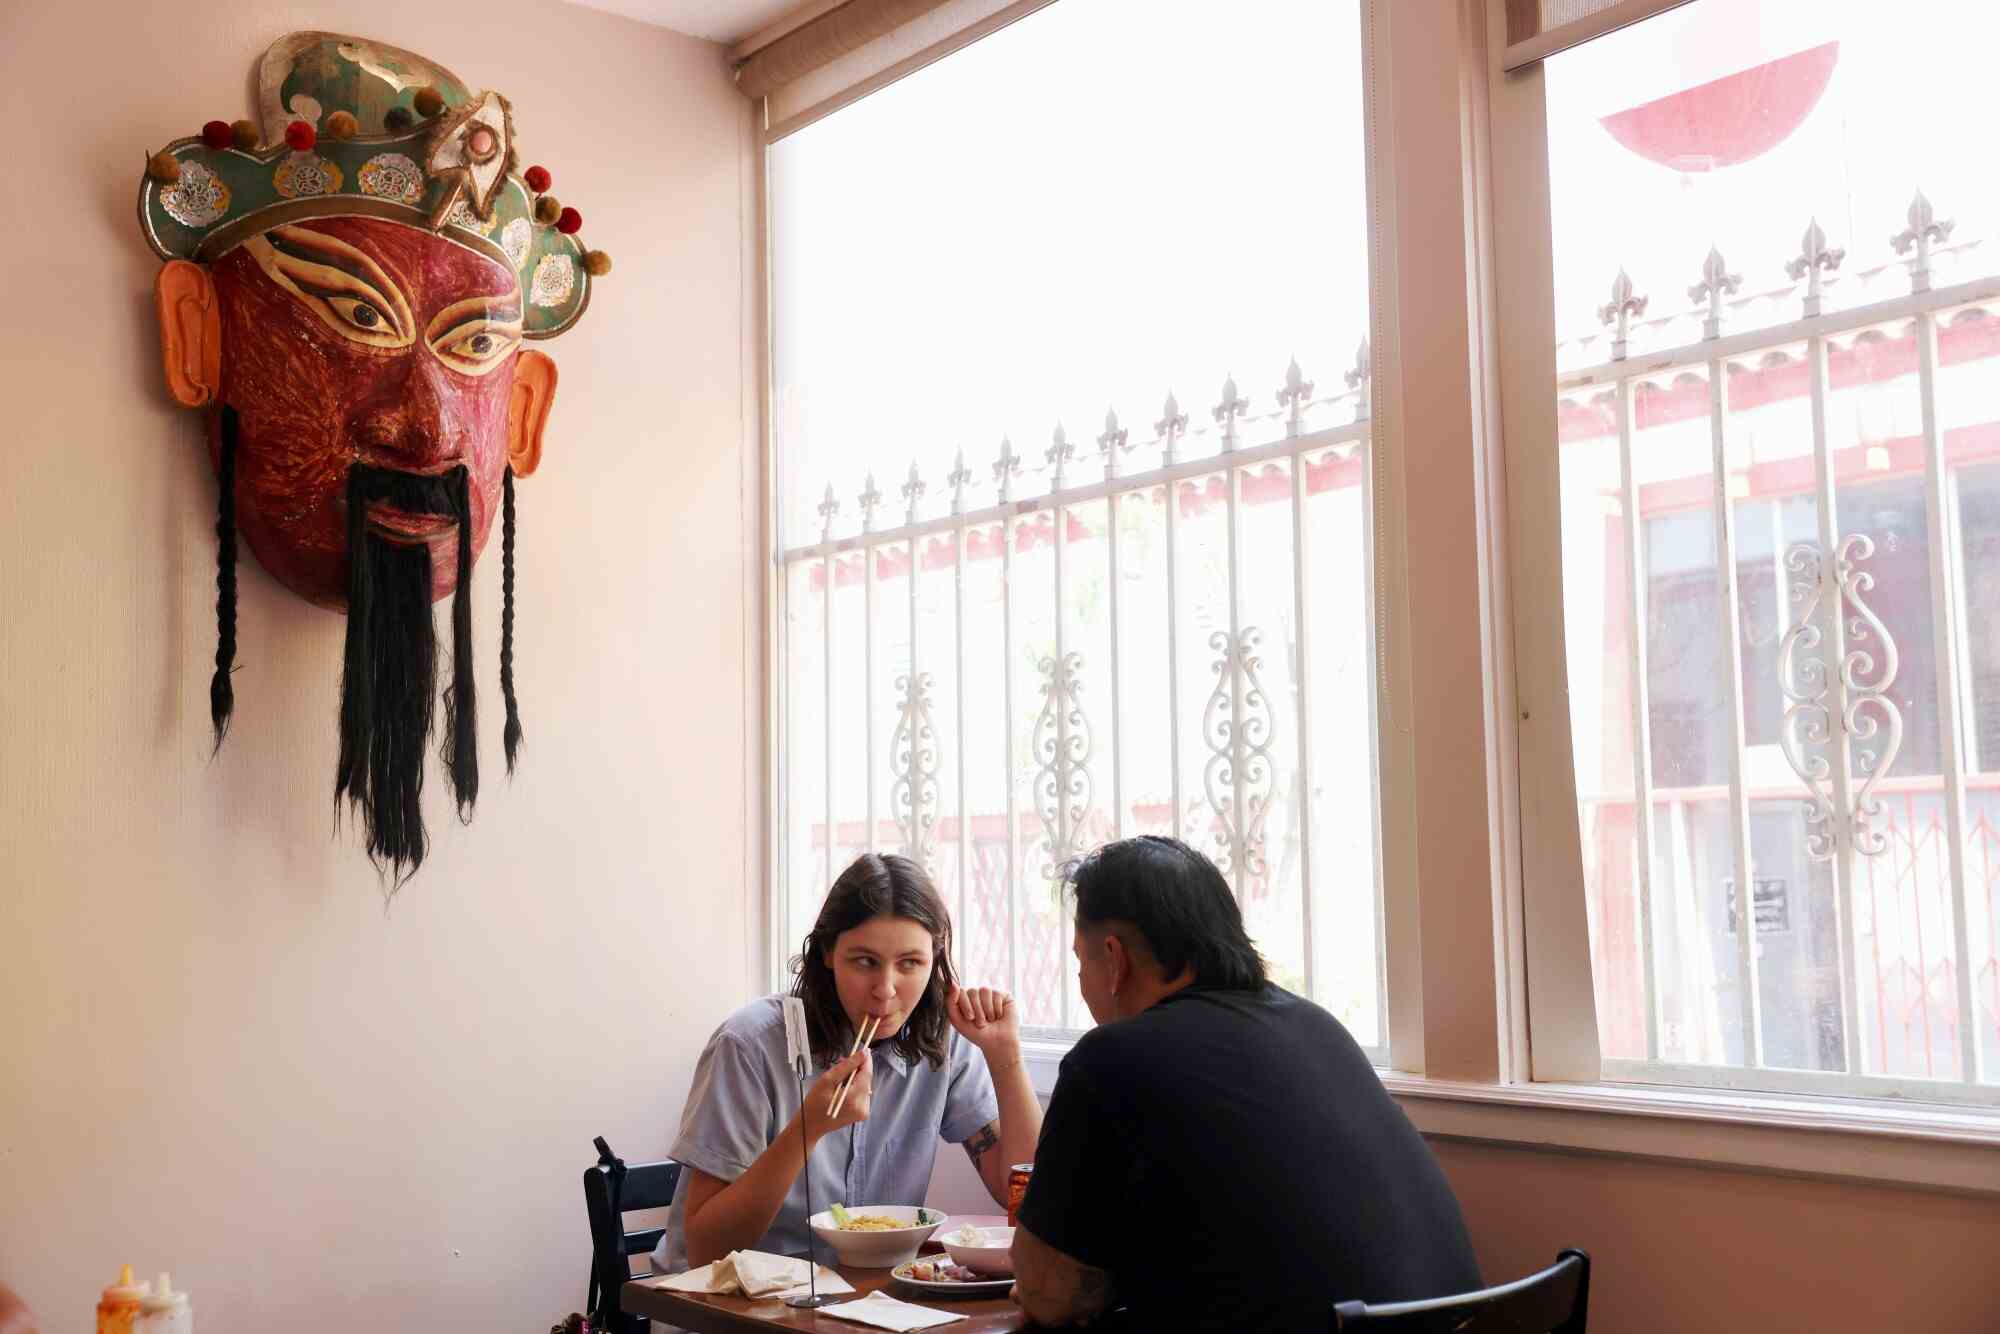 Zwei Personen speisen in einem Restaurant neben einem Fenster, über ihnen hängt eine große Maske an der Wand.